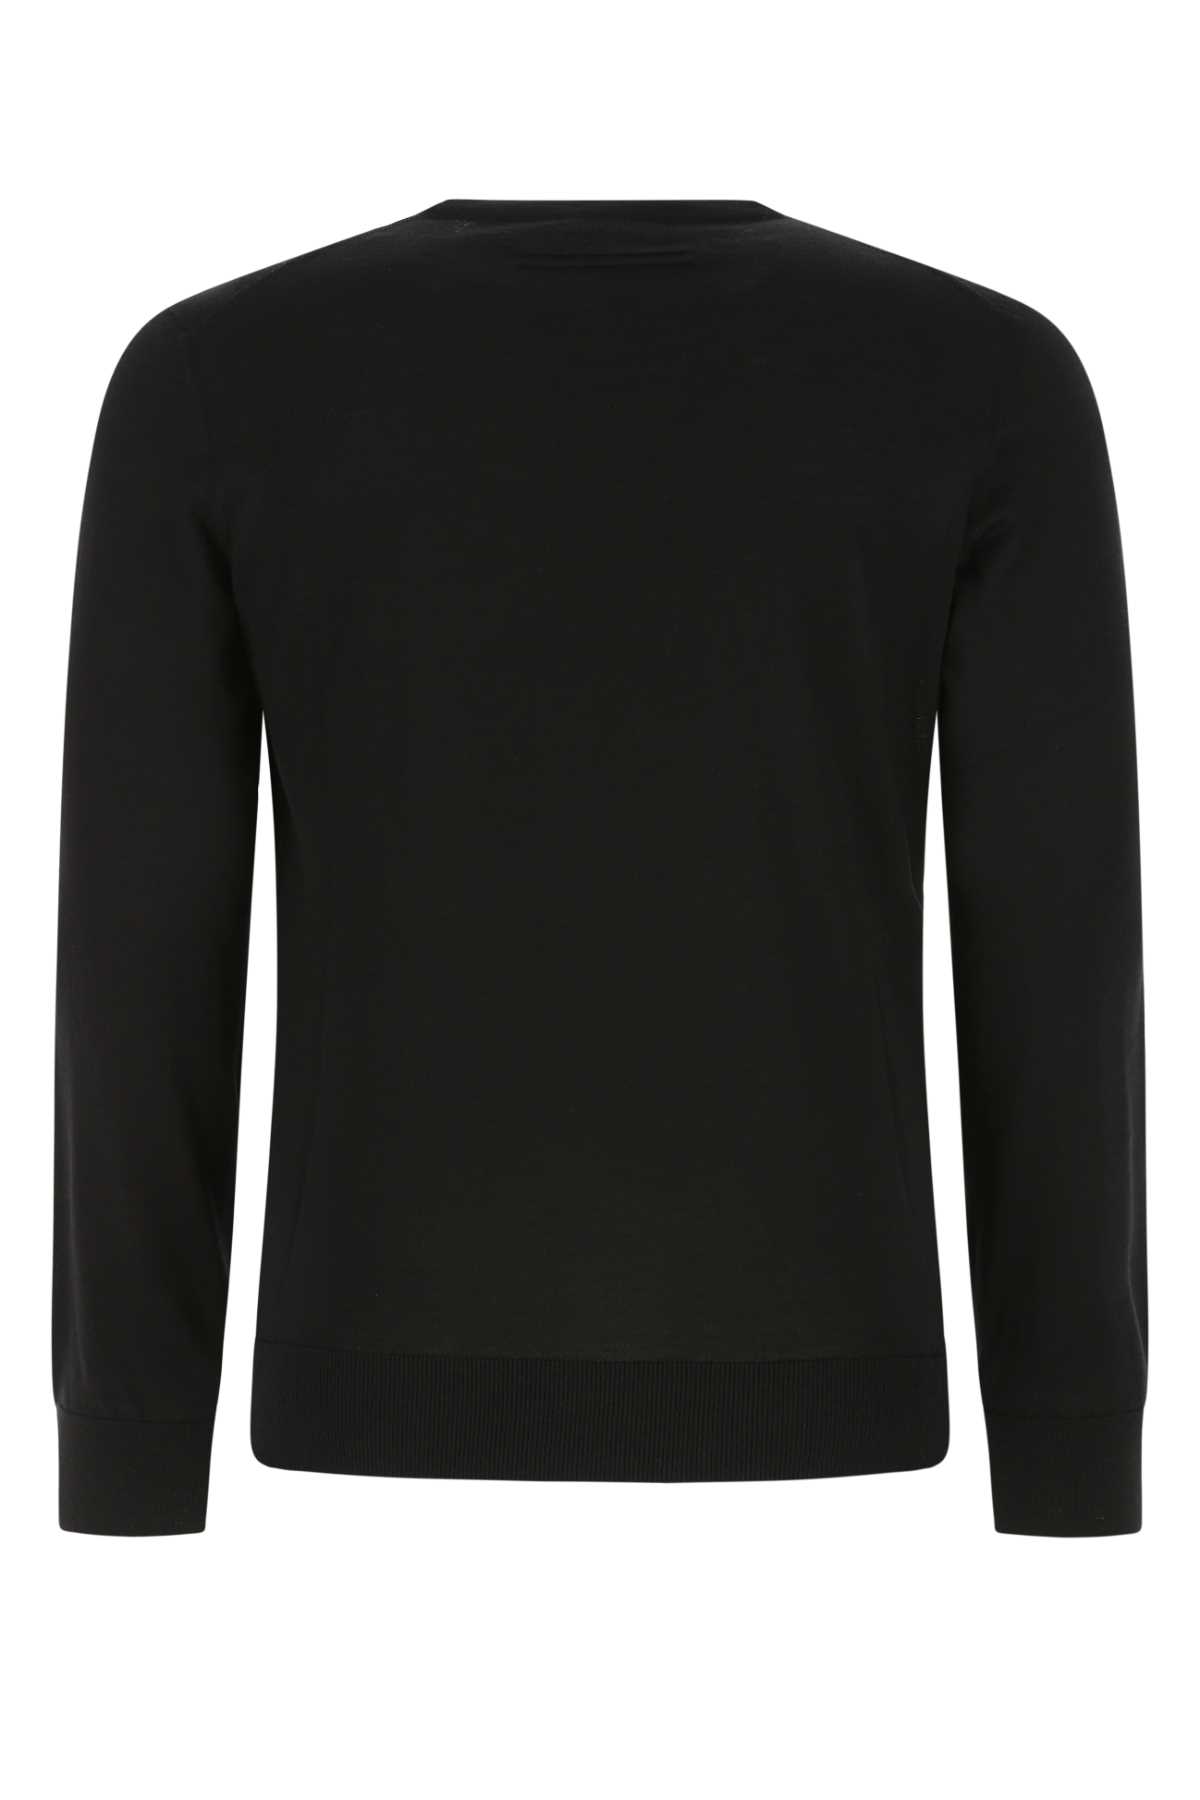 Zegna Black Cashmere Blend Sweater In K09